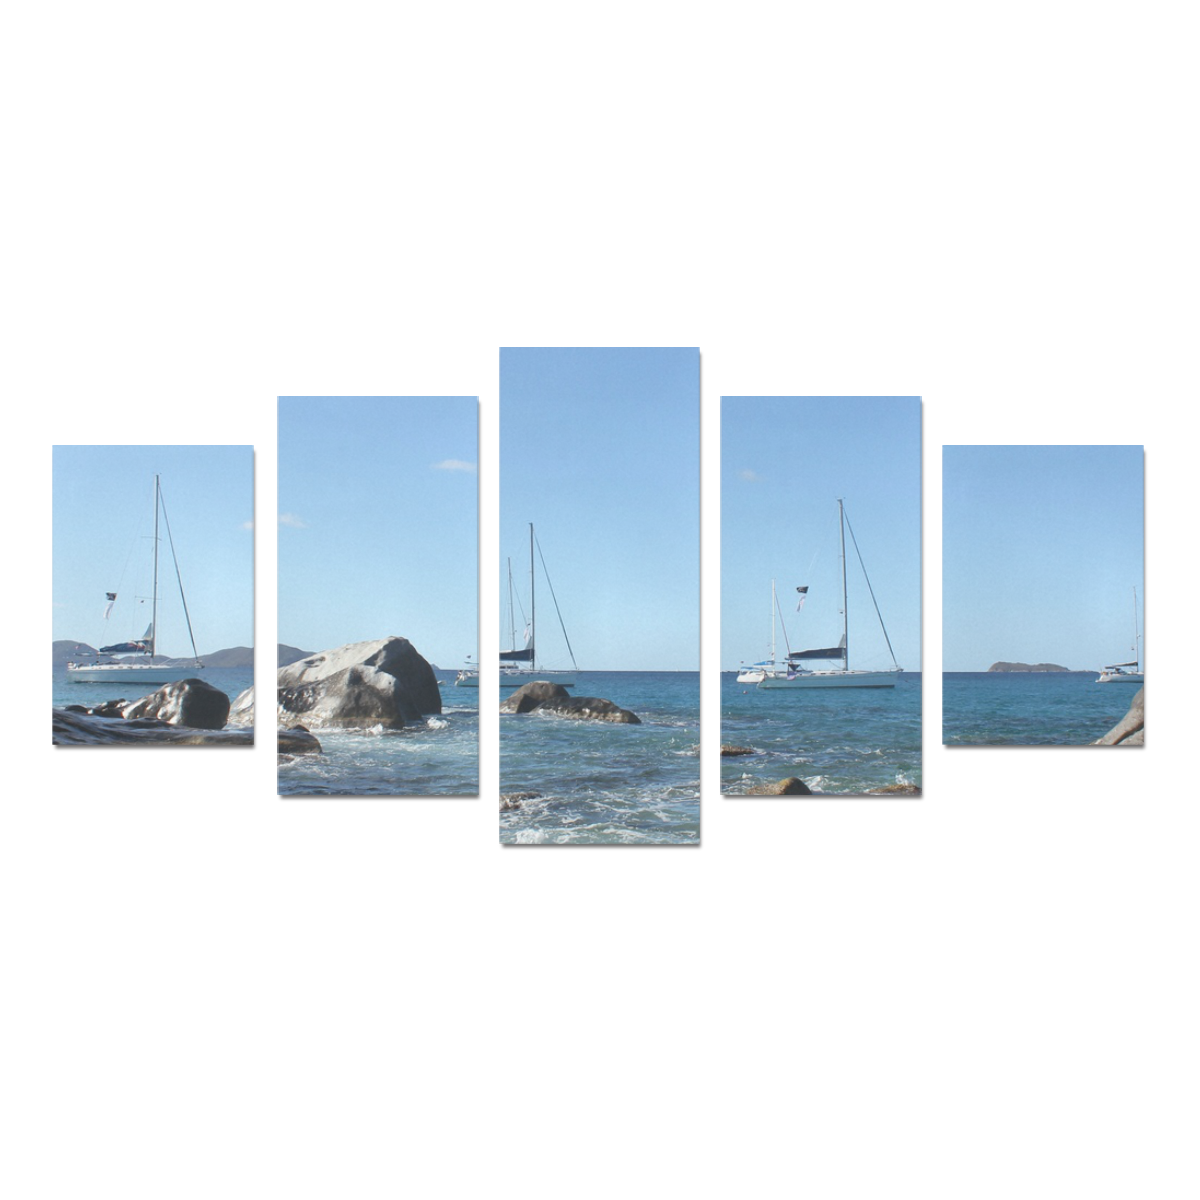 Sailing Boats at Virgin Gorda BVI Canvas Print Sets D (No Frame)